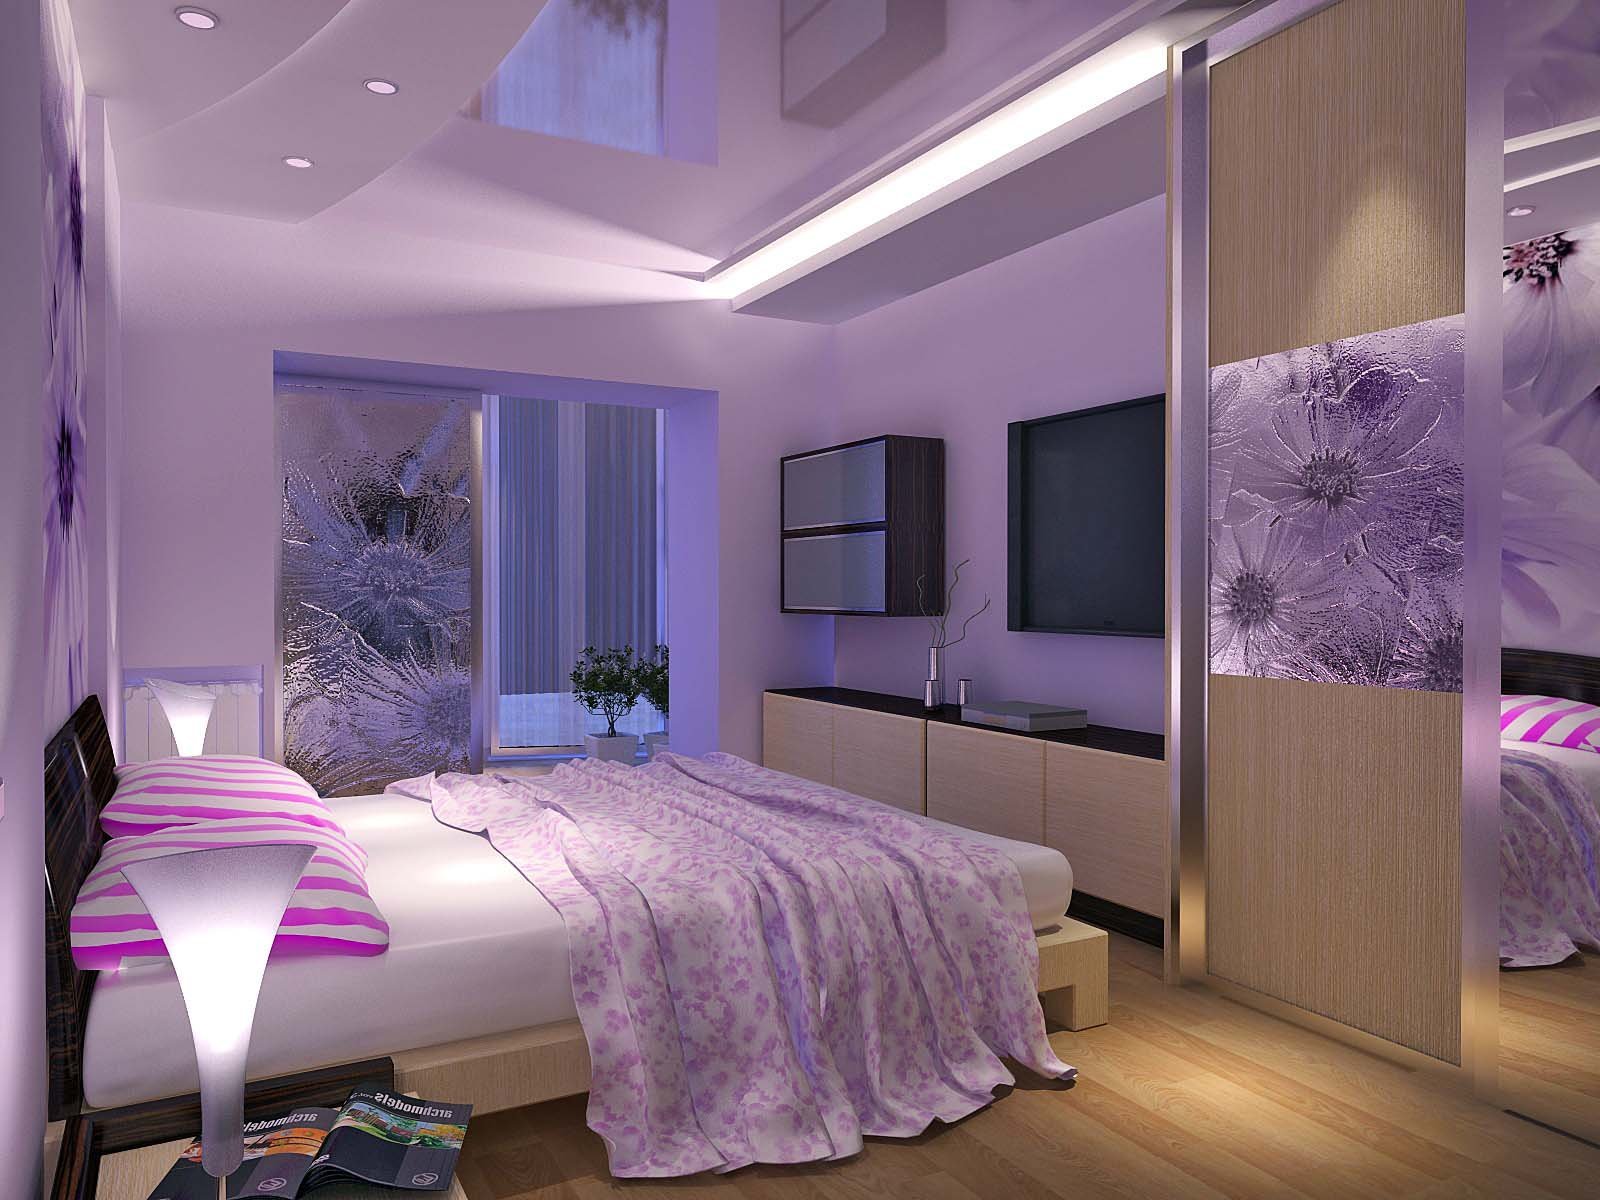 Где можно найти комнаты. Спальня в фиолетовых тонах. Сиреневый цвет в интерьере спальни. Спальня в лиловых тонах. Спальня в сиреневых оттенках.